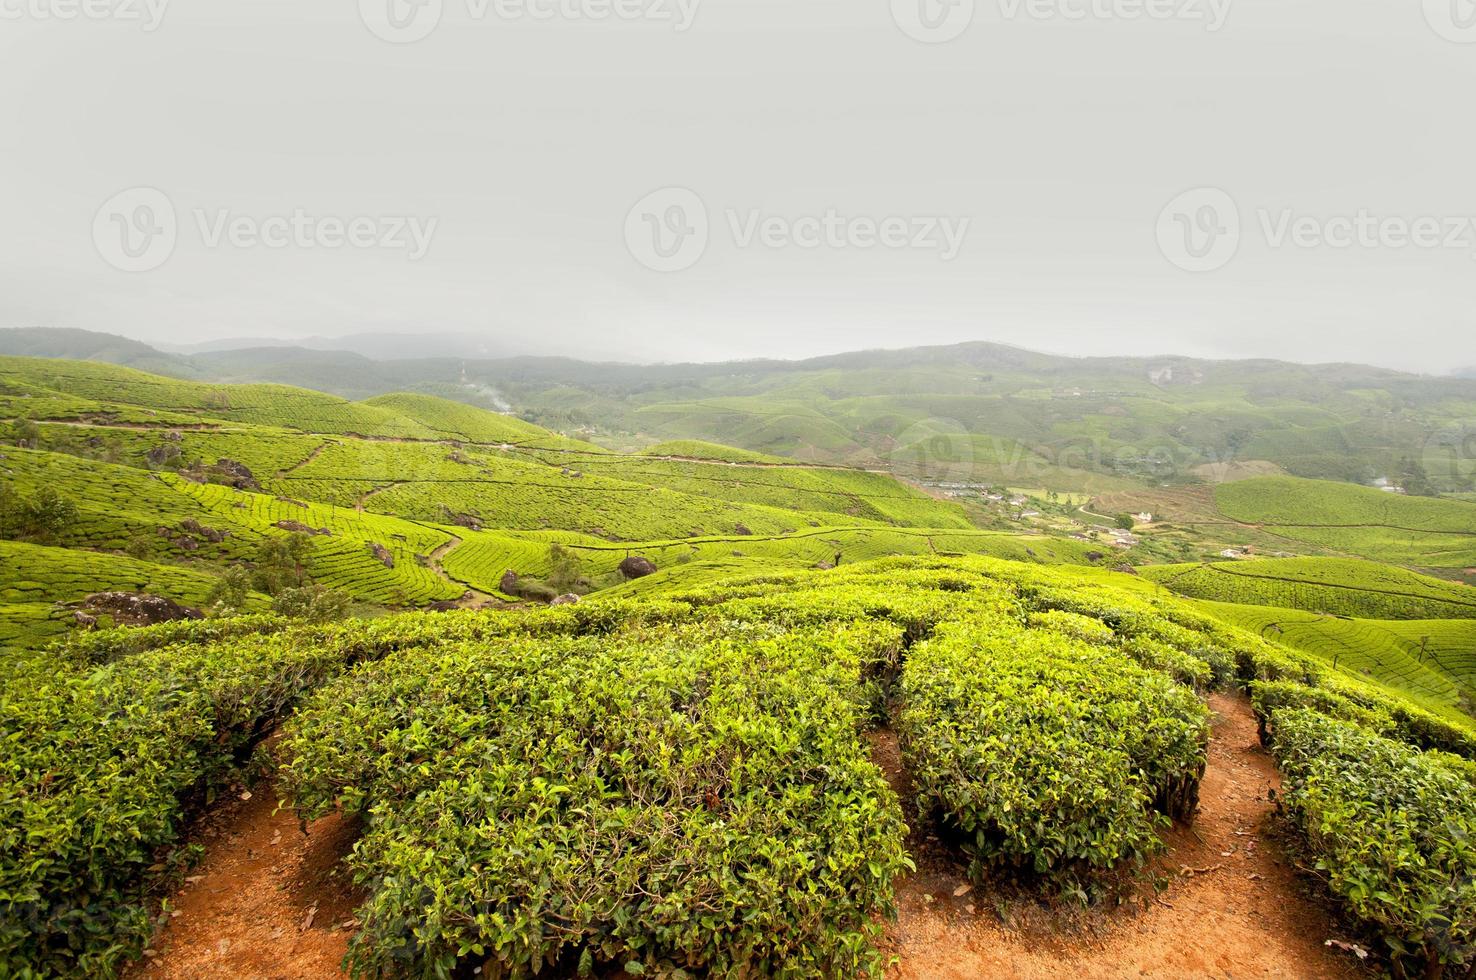 plantação de chá, colheita de chá foto